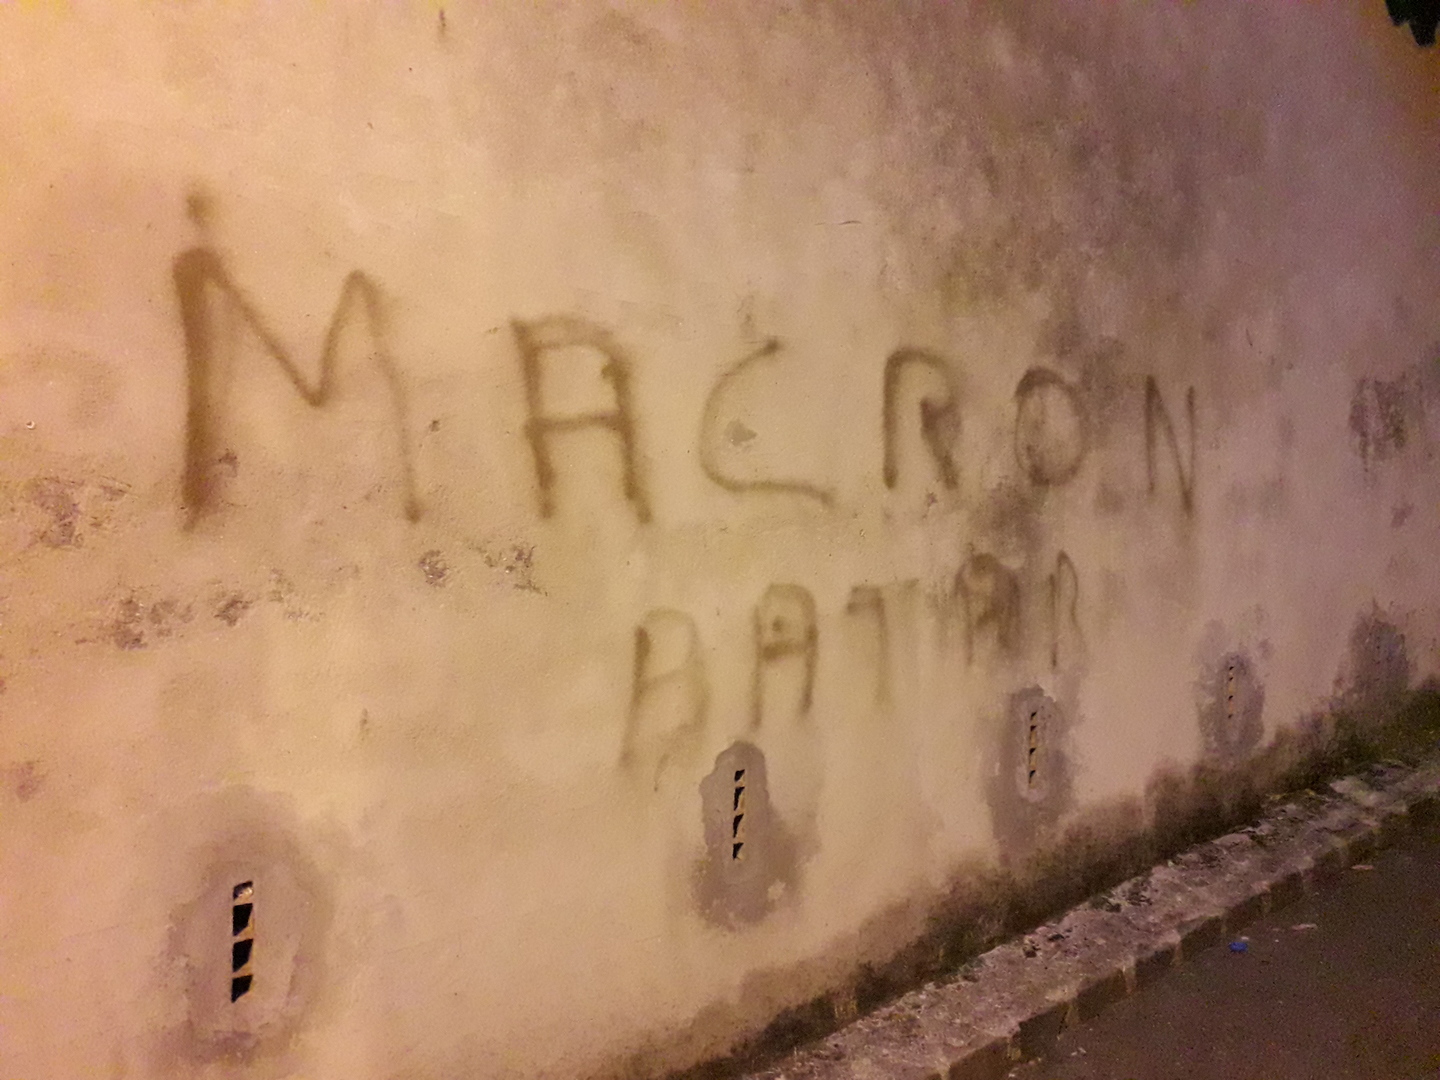 Image 2 : Tag mural avec pour mention Macron batar